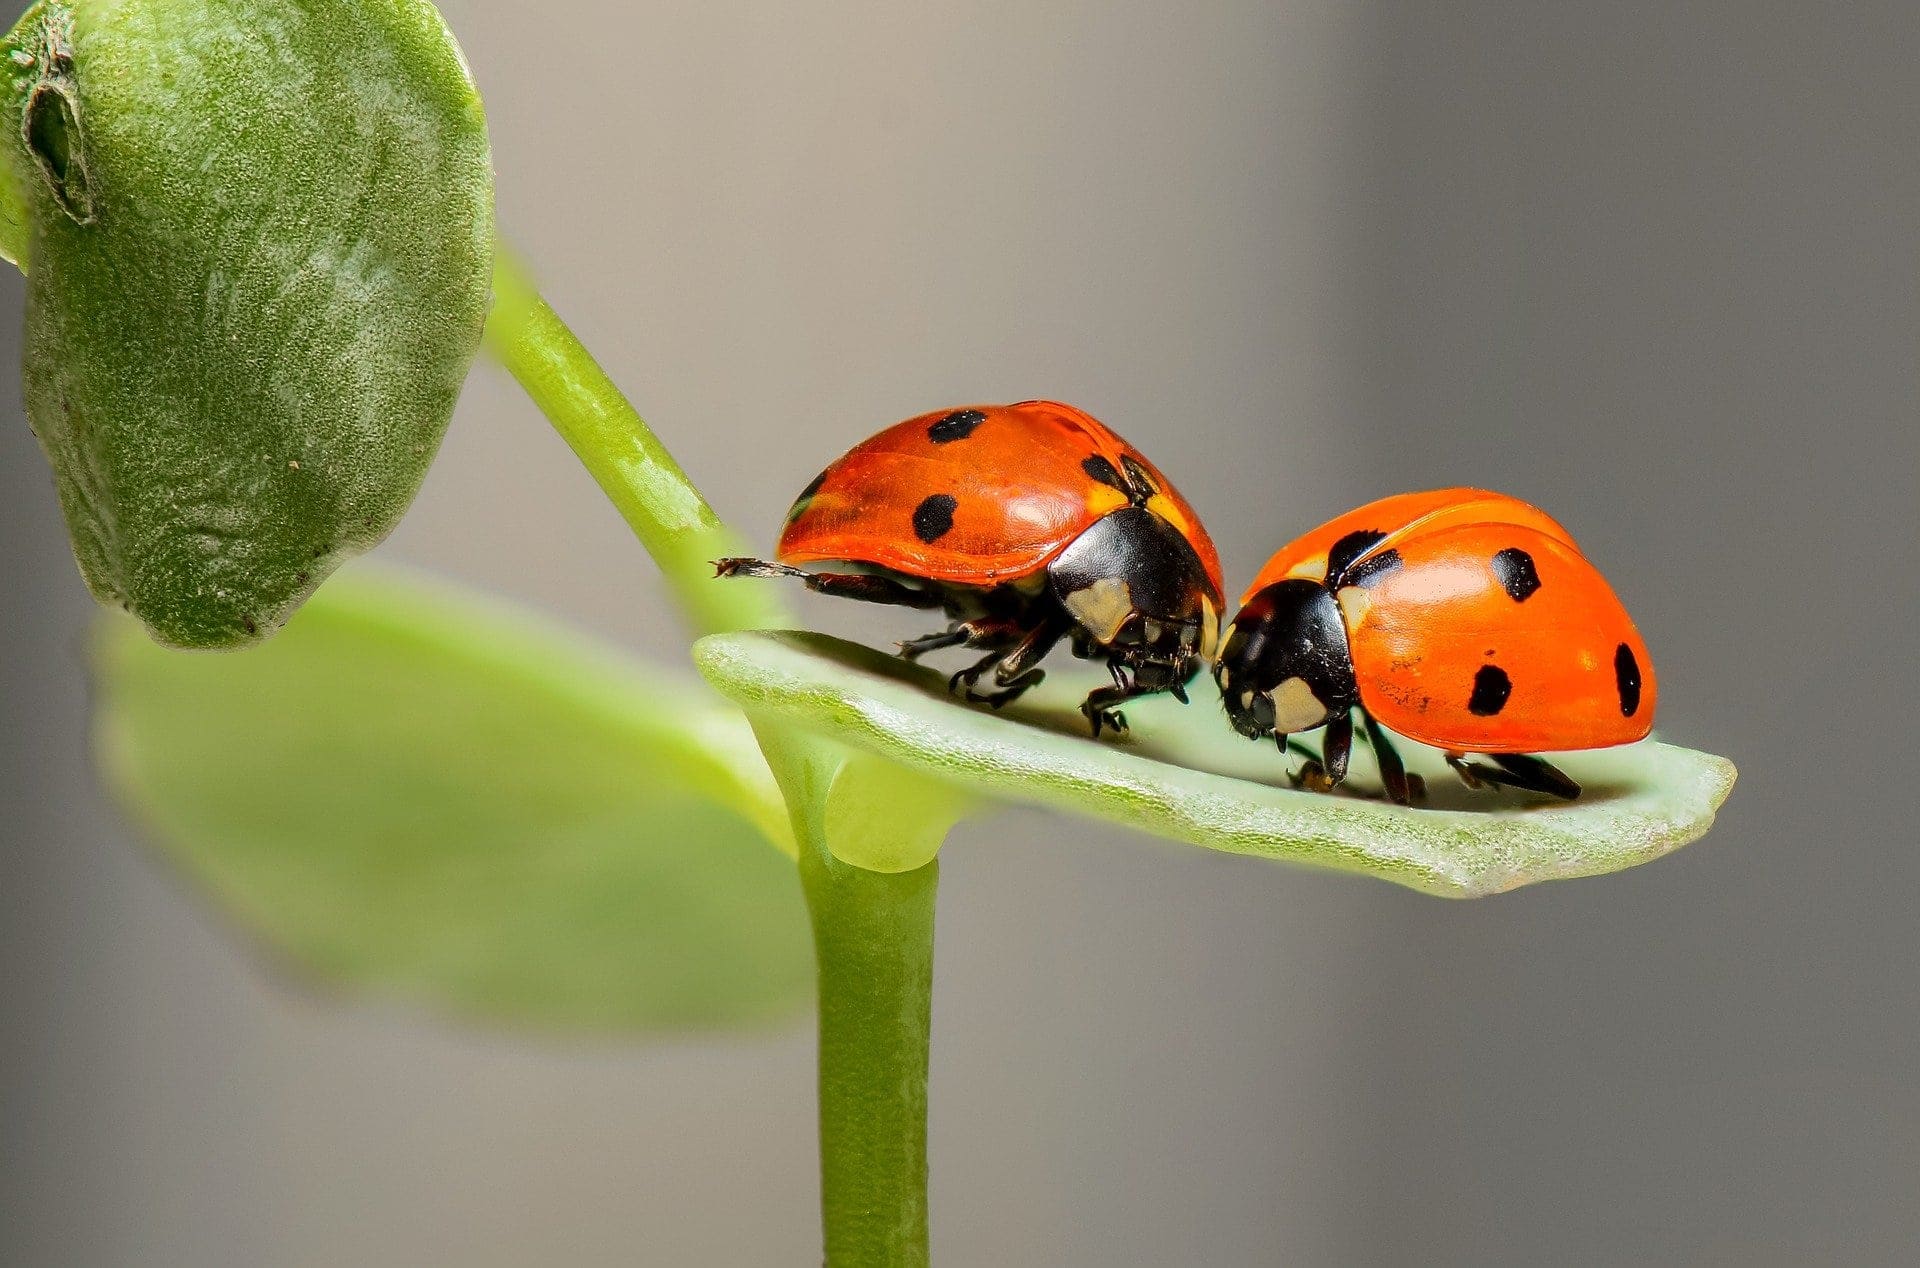 Ladybugs on a leaf